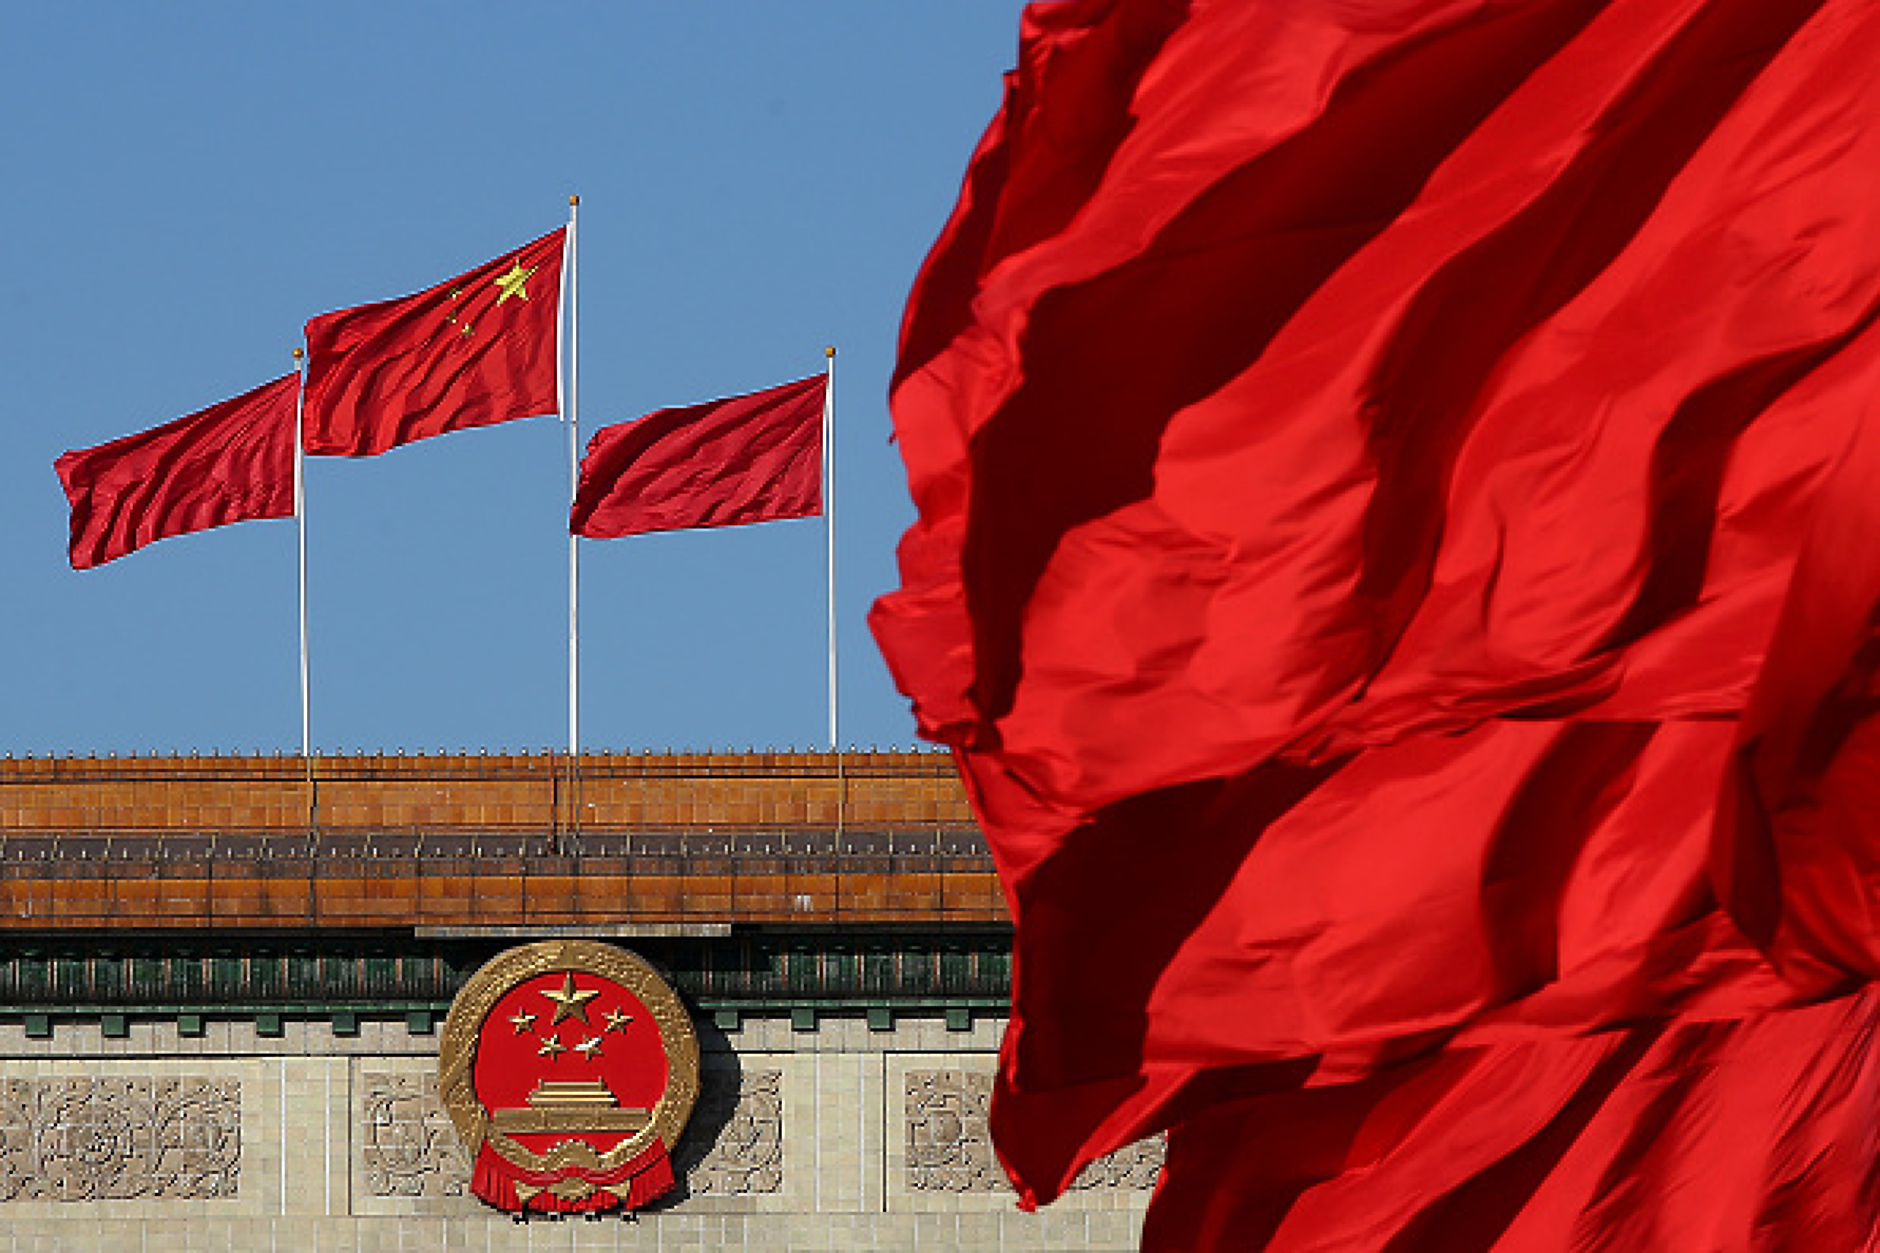 Китай реагира с официално изявление след изборите в Тайван